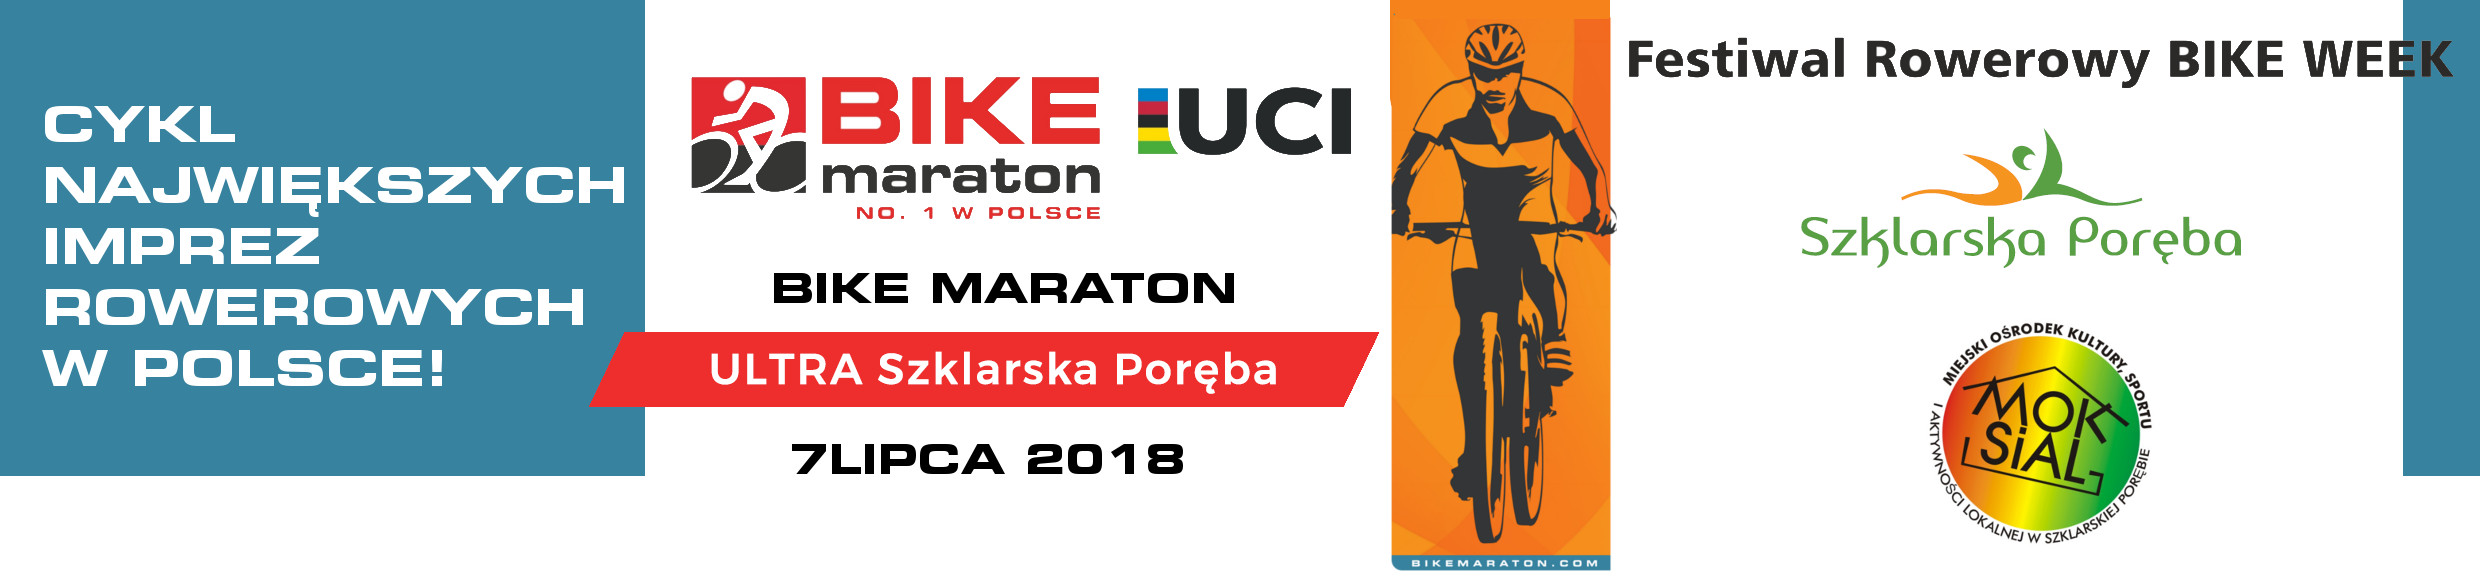 Bike Maraton 2018 belka